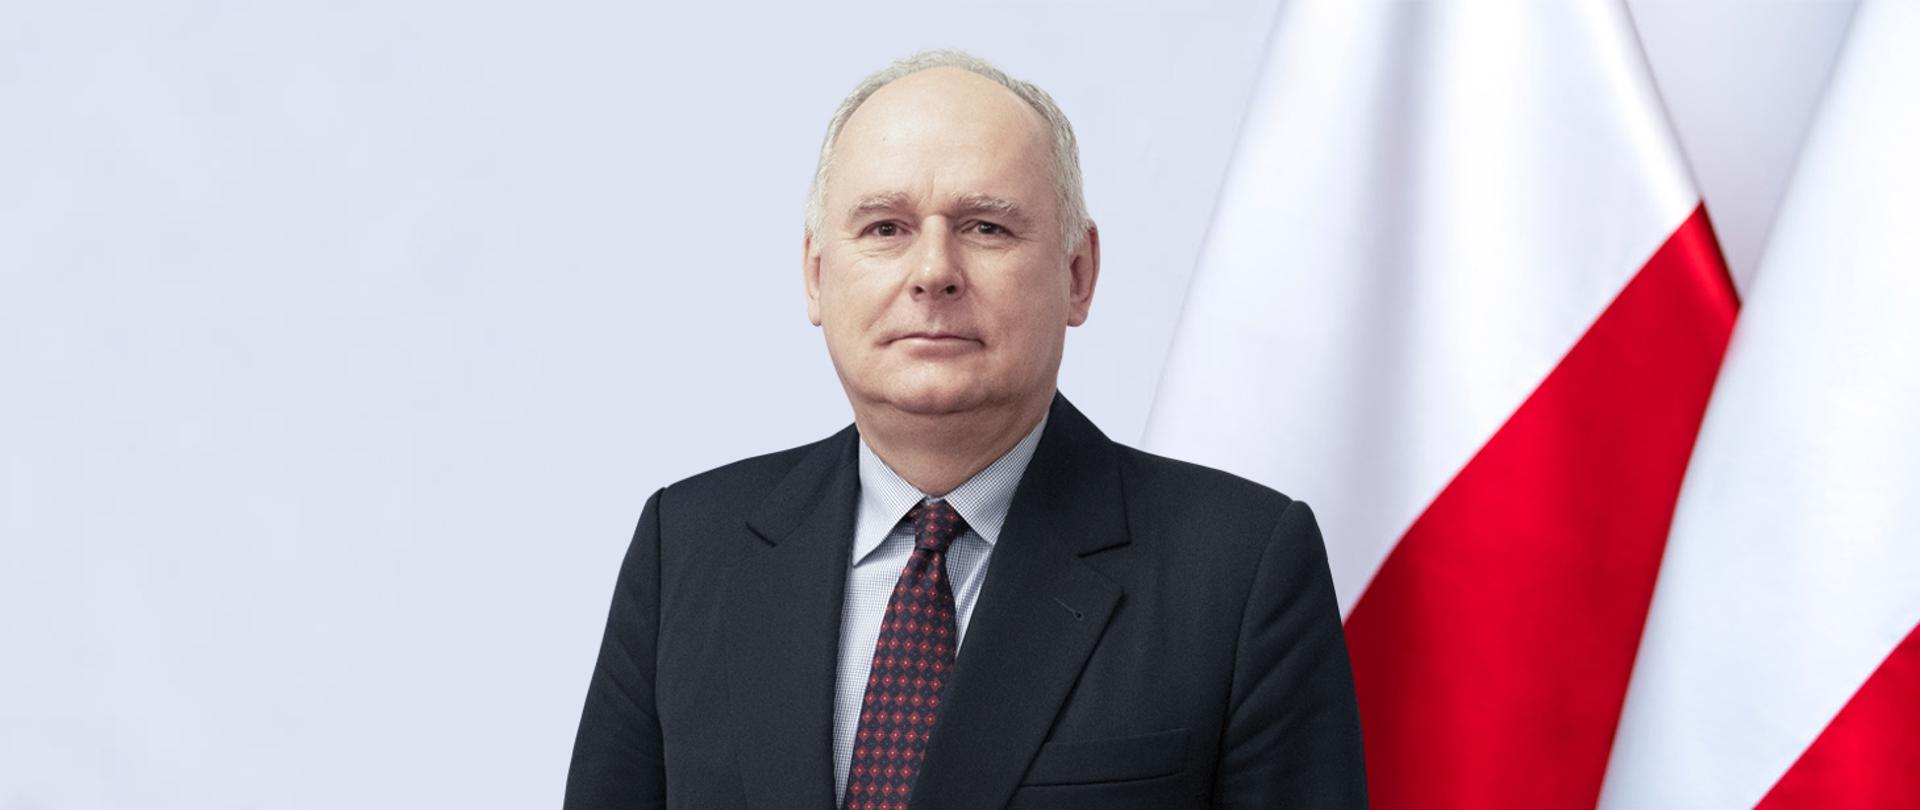 Paweł Ksawery Zalewski